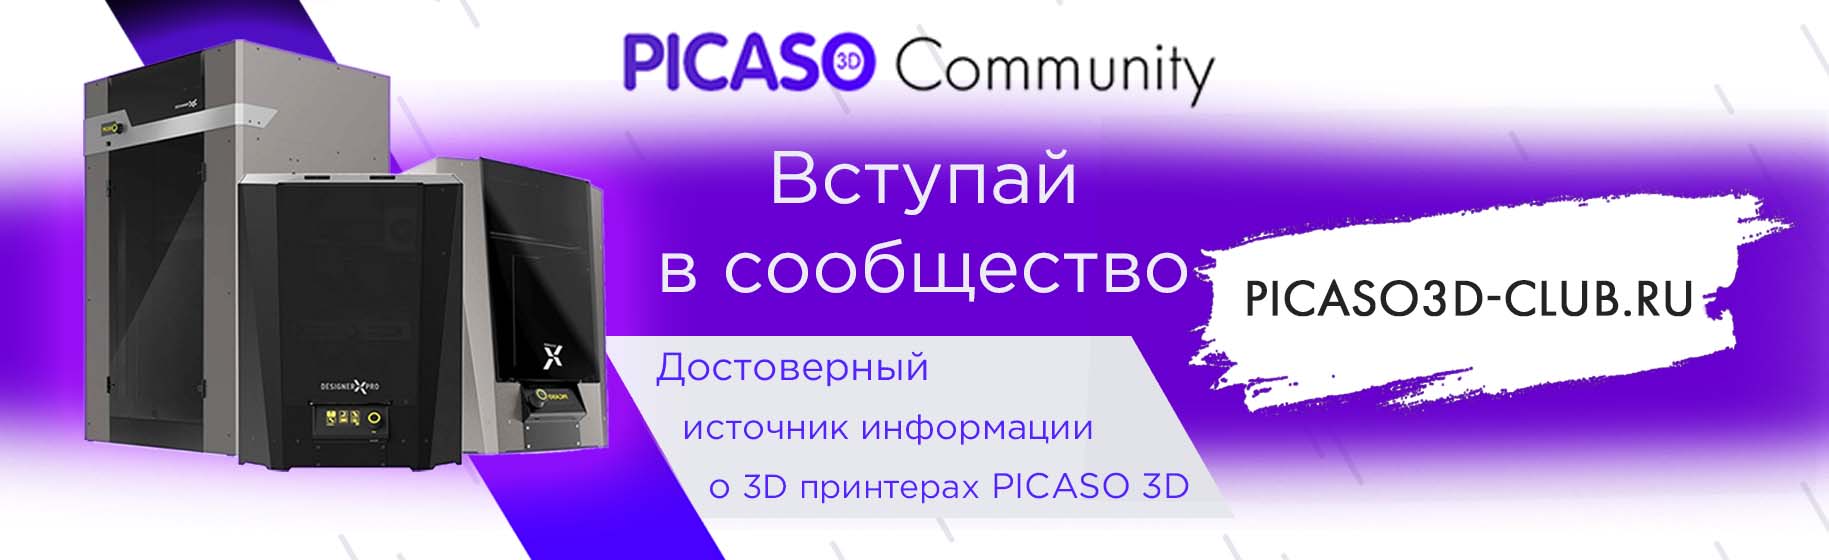 Информационный портал для пользователей 3D принтеров PICASO 3D.